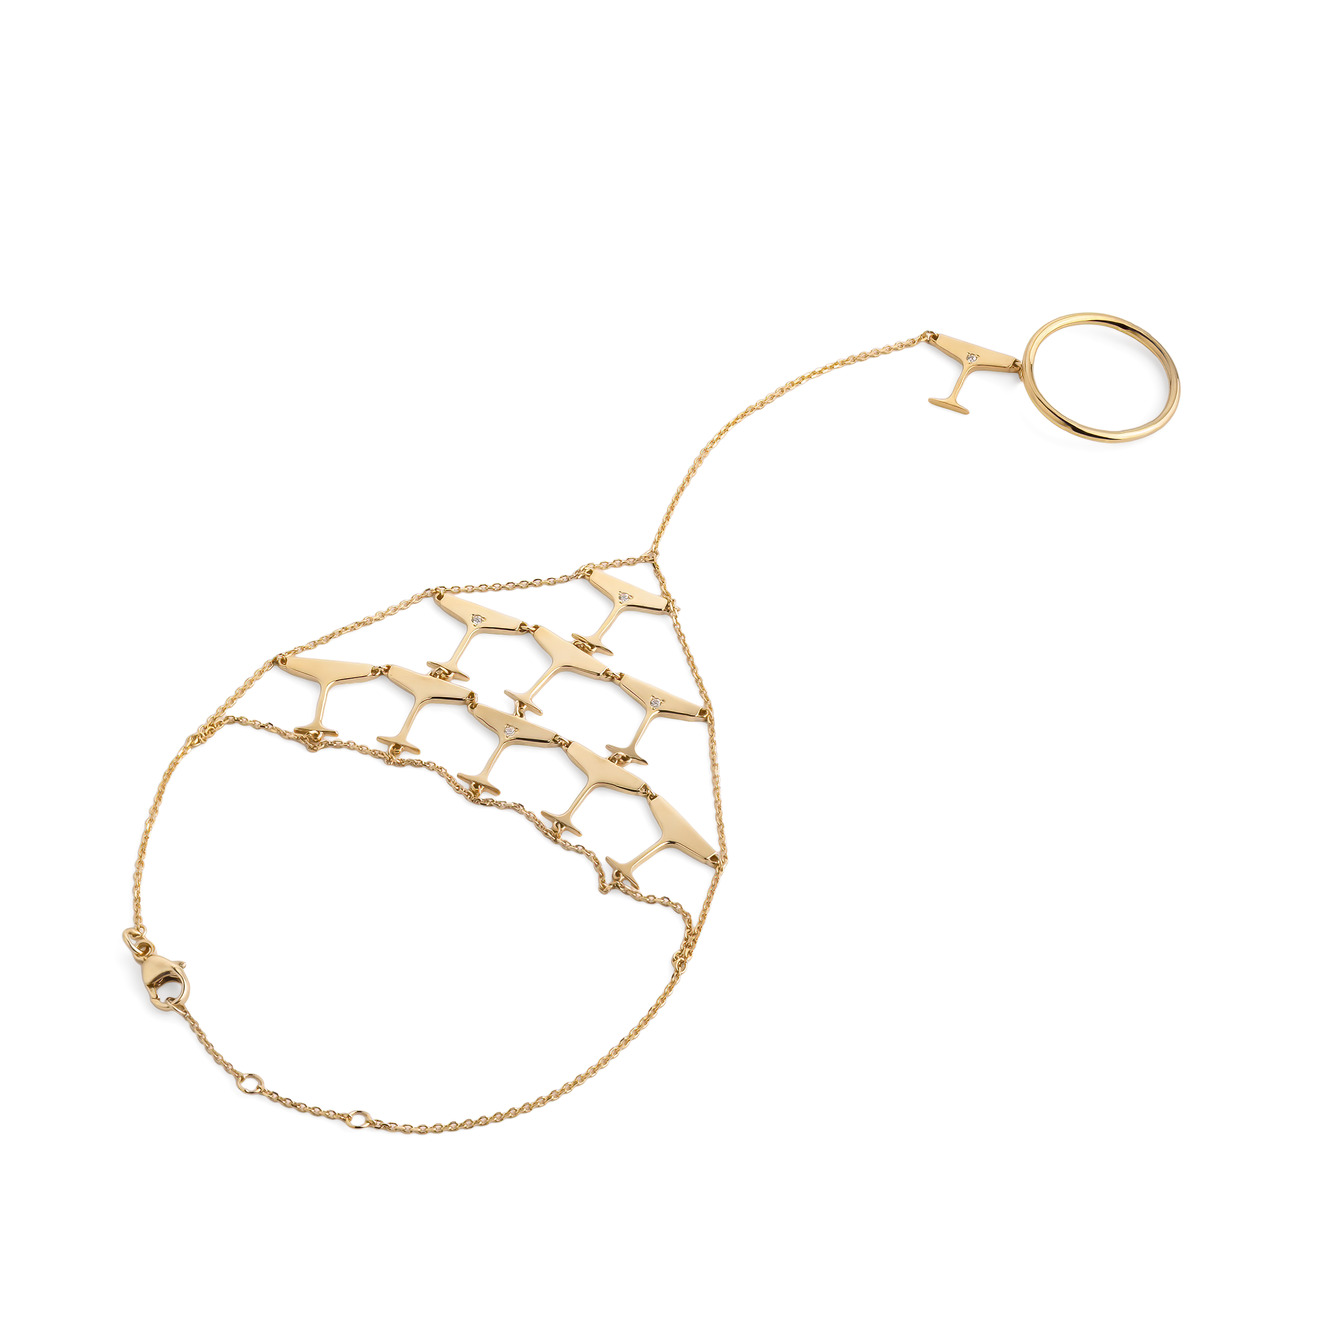 LUTA Jewelry Специальная коллекция Chandon x Poison Drop. Покрытый лимонным золотом браслет-слейв из серебра Sparkling